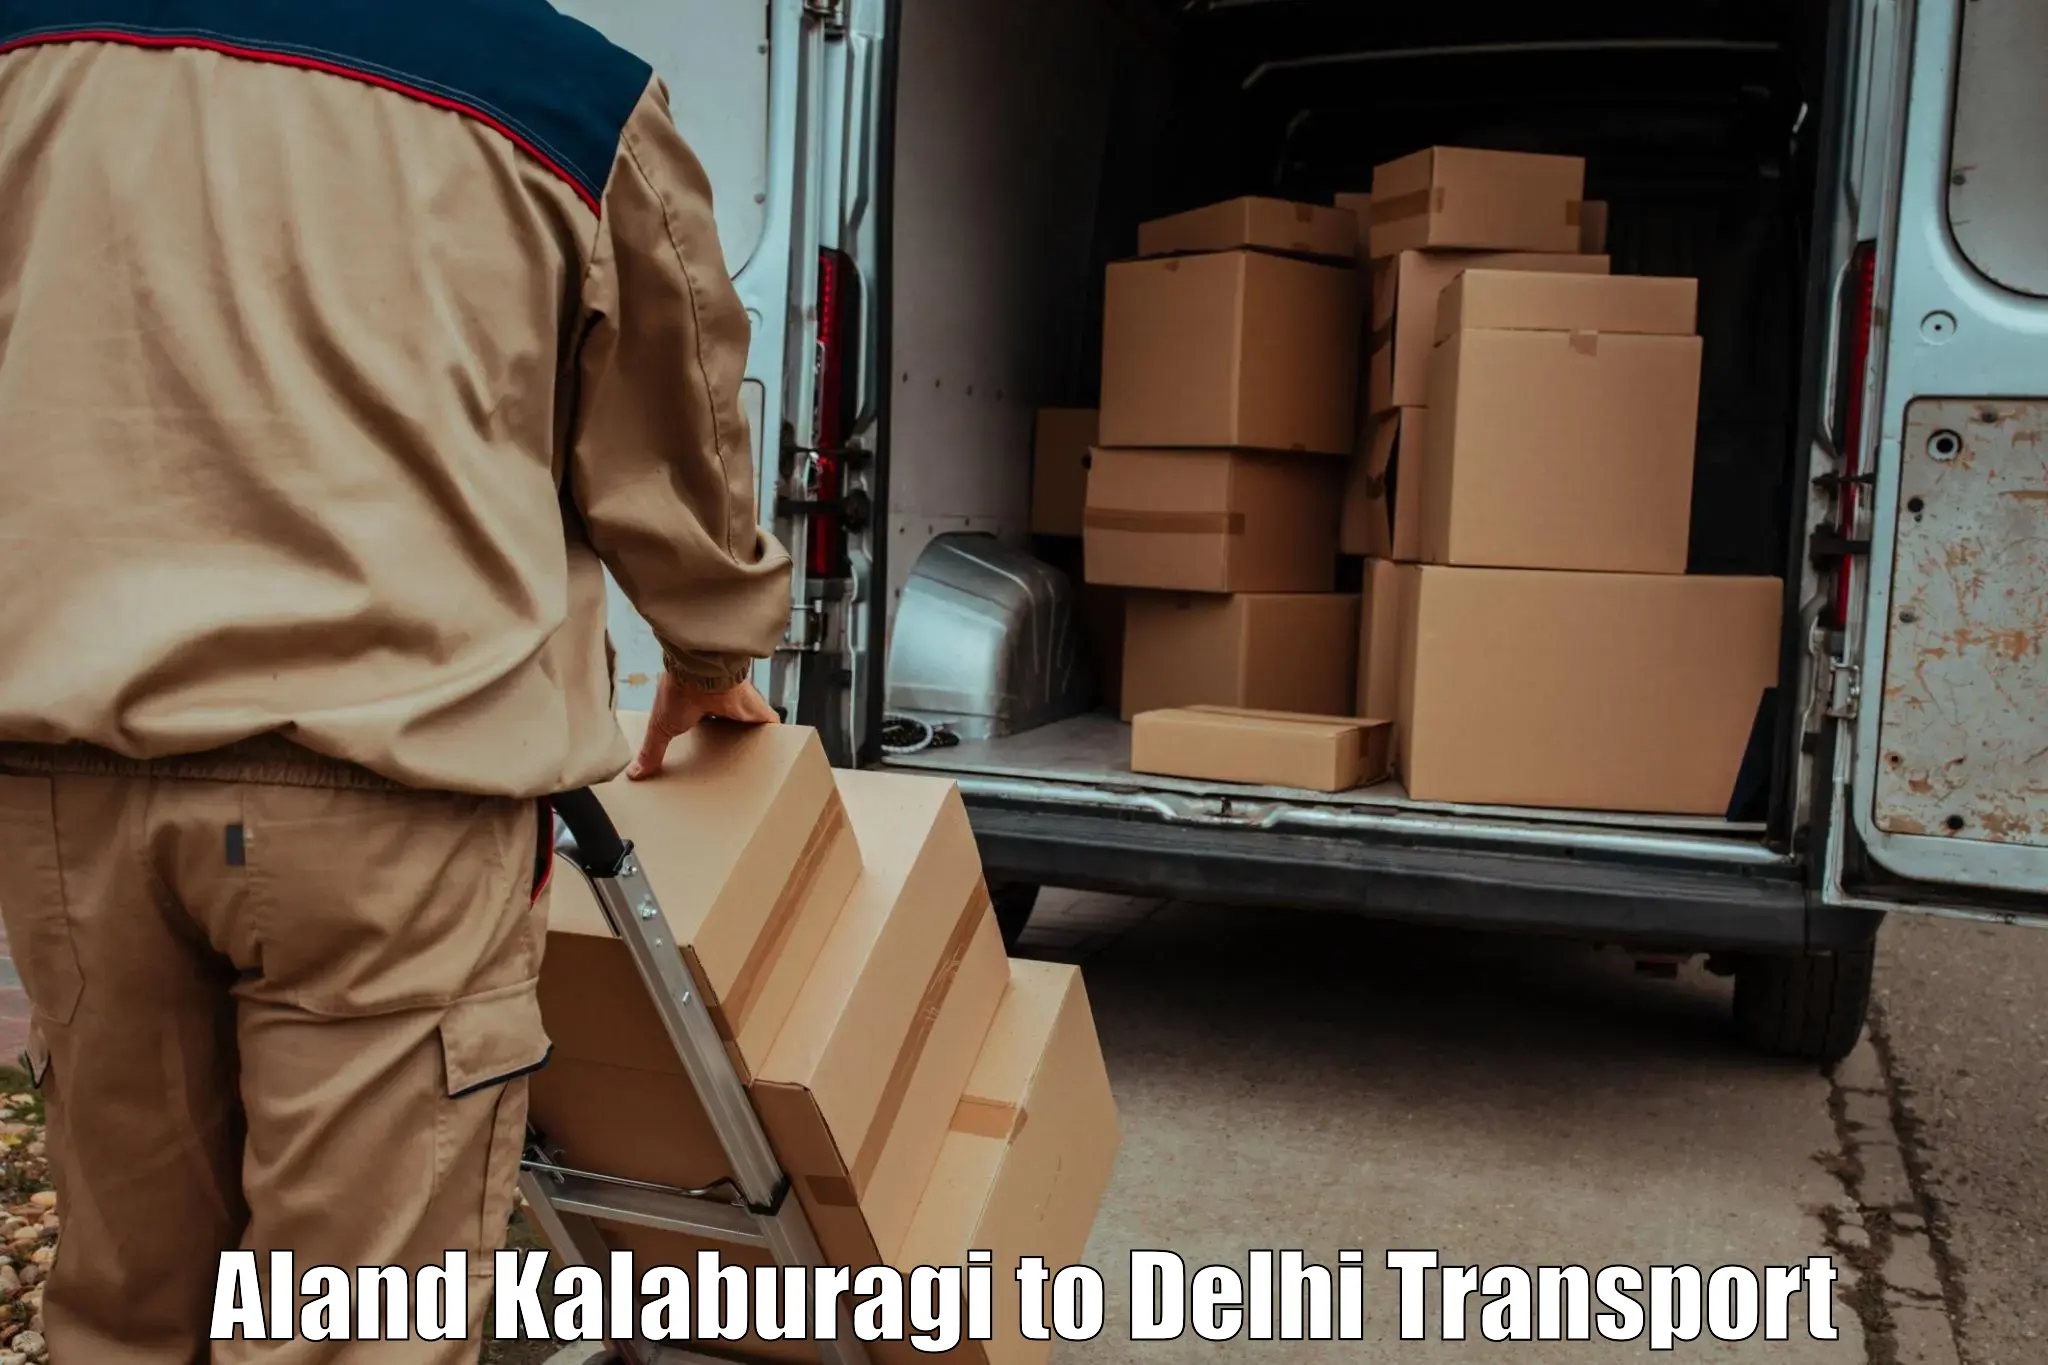 Two wheeler transport services Aland Kalaburagi to NIT Delhi